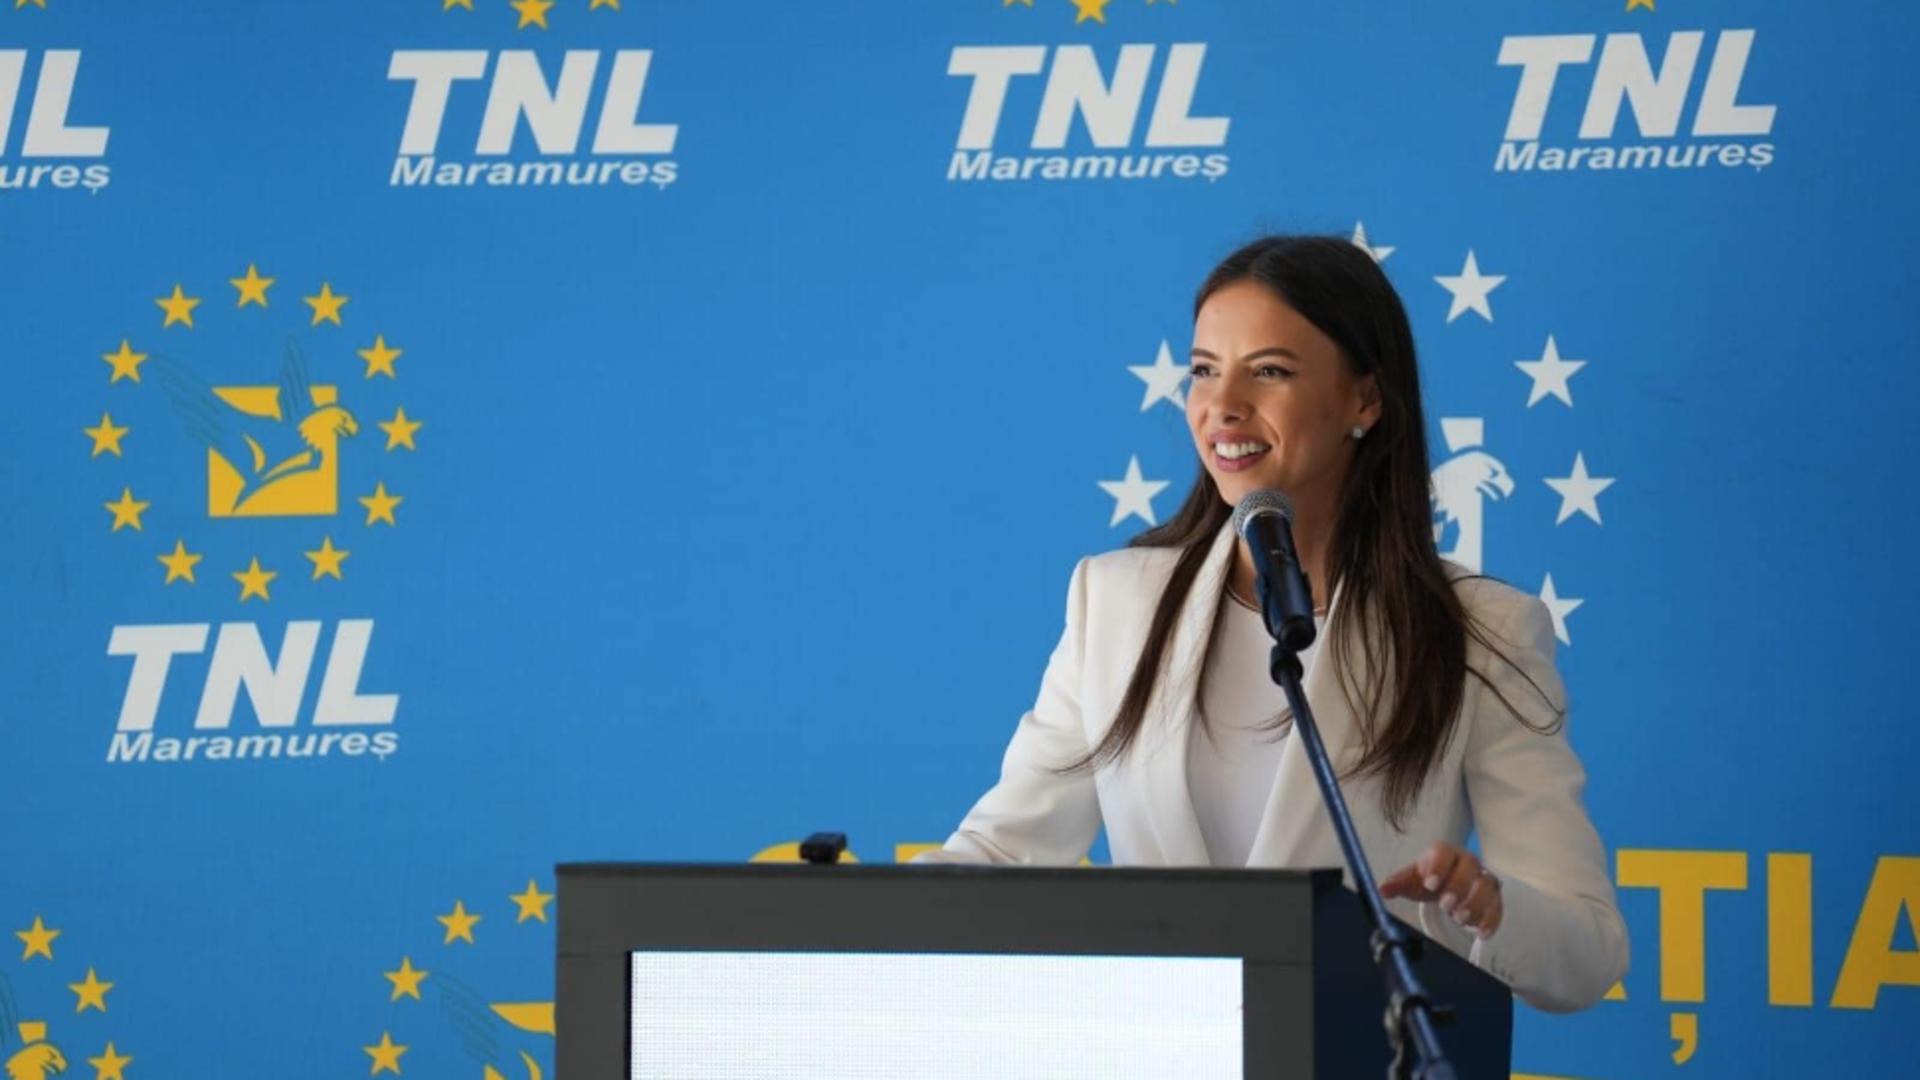 Mara Mareș, președinta TNL: Pentru alegerile locale din acest an, sper că vom avea un tânăr ales în fiecare comunitate locală